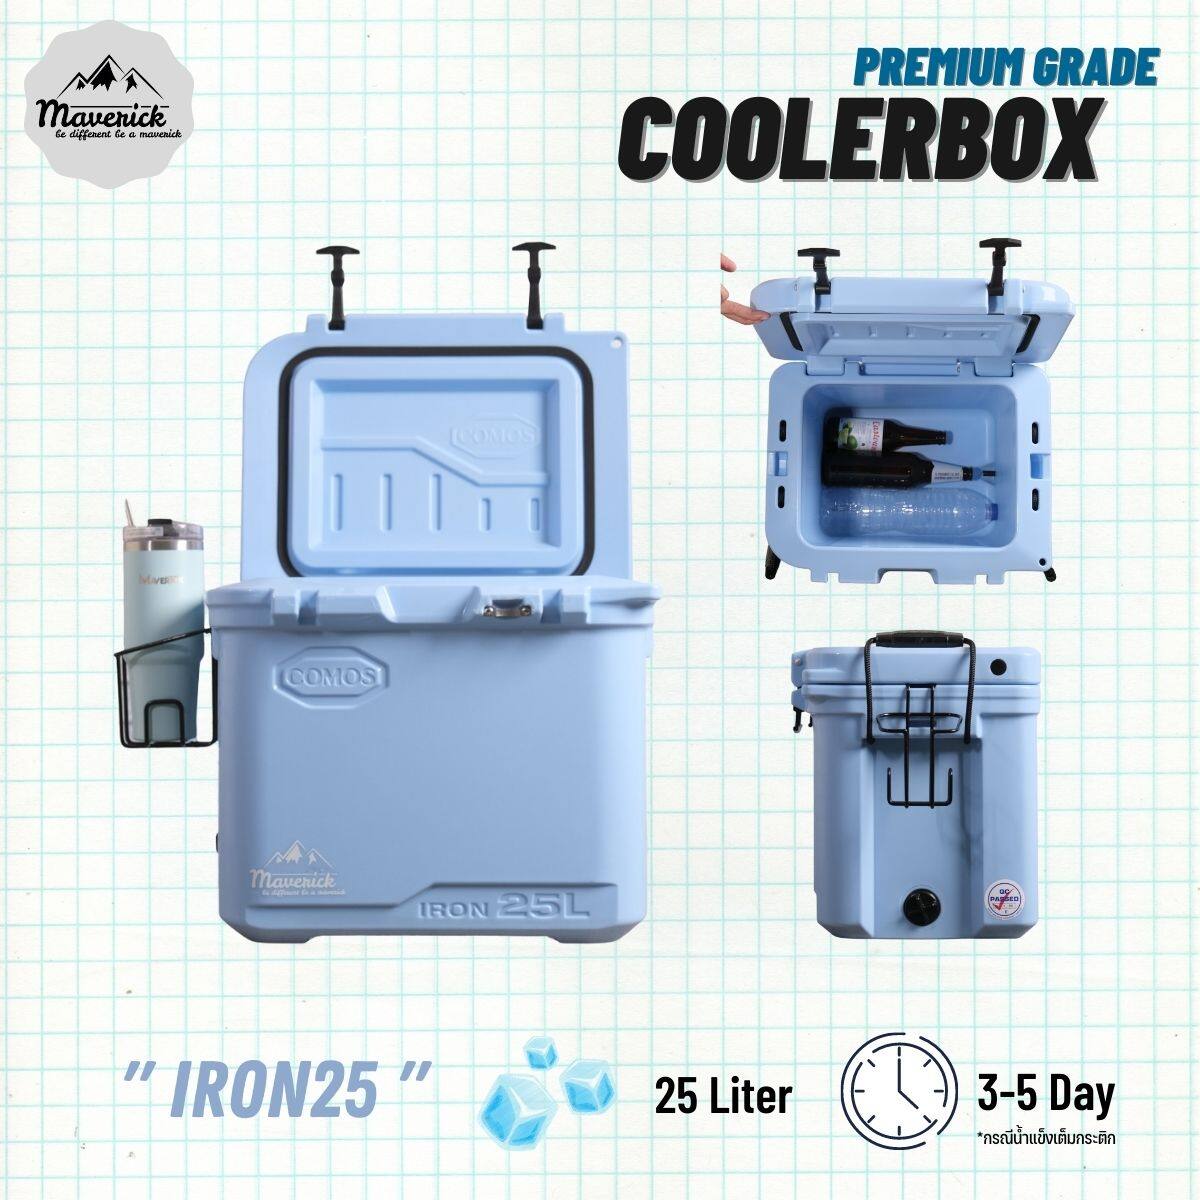 กระติกน้ำแข็ง ถังน้ำแข็ง พรีเมี่ยมเกรด( Coolerbox Premuim Grade )  Comos  รุ่น IRON25L เก็บความเย็นได้ 3-5 วัน